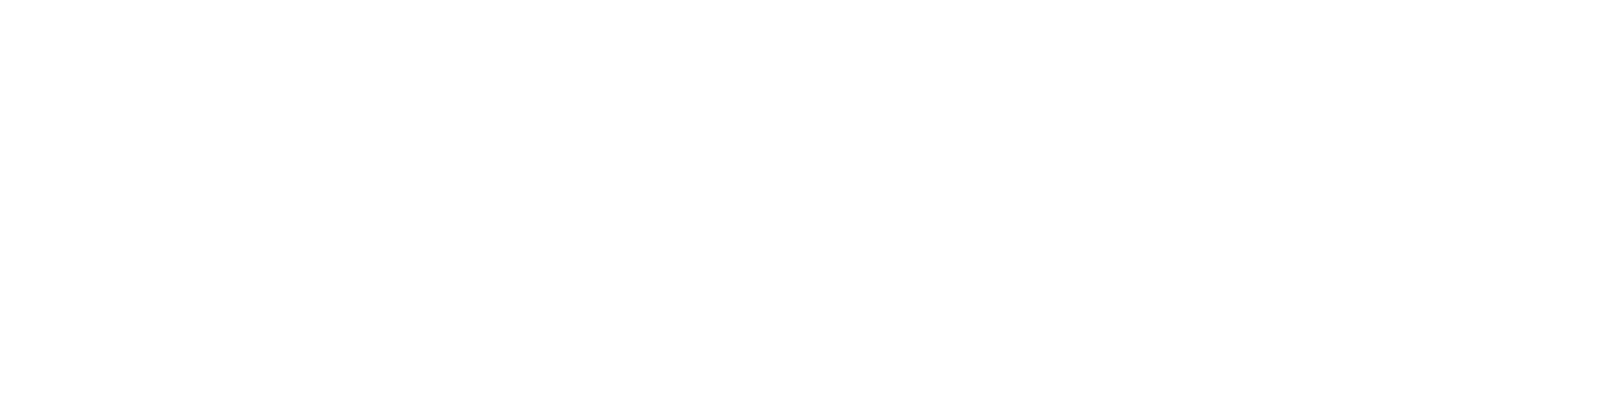 Happinet logo grand pour les fonds sombres (PNG transparent)